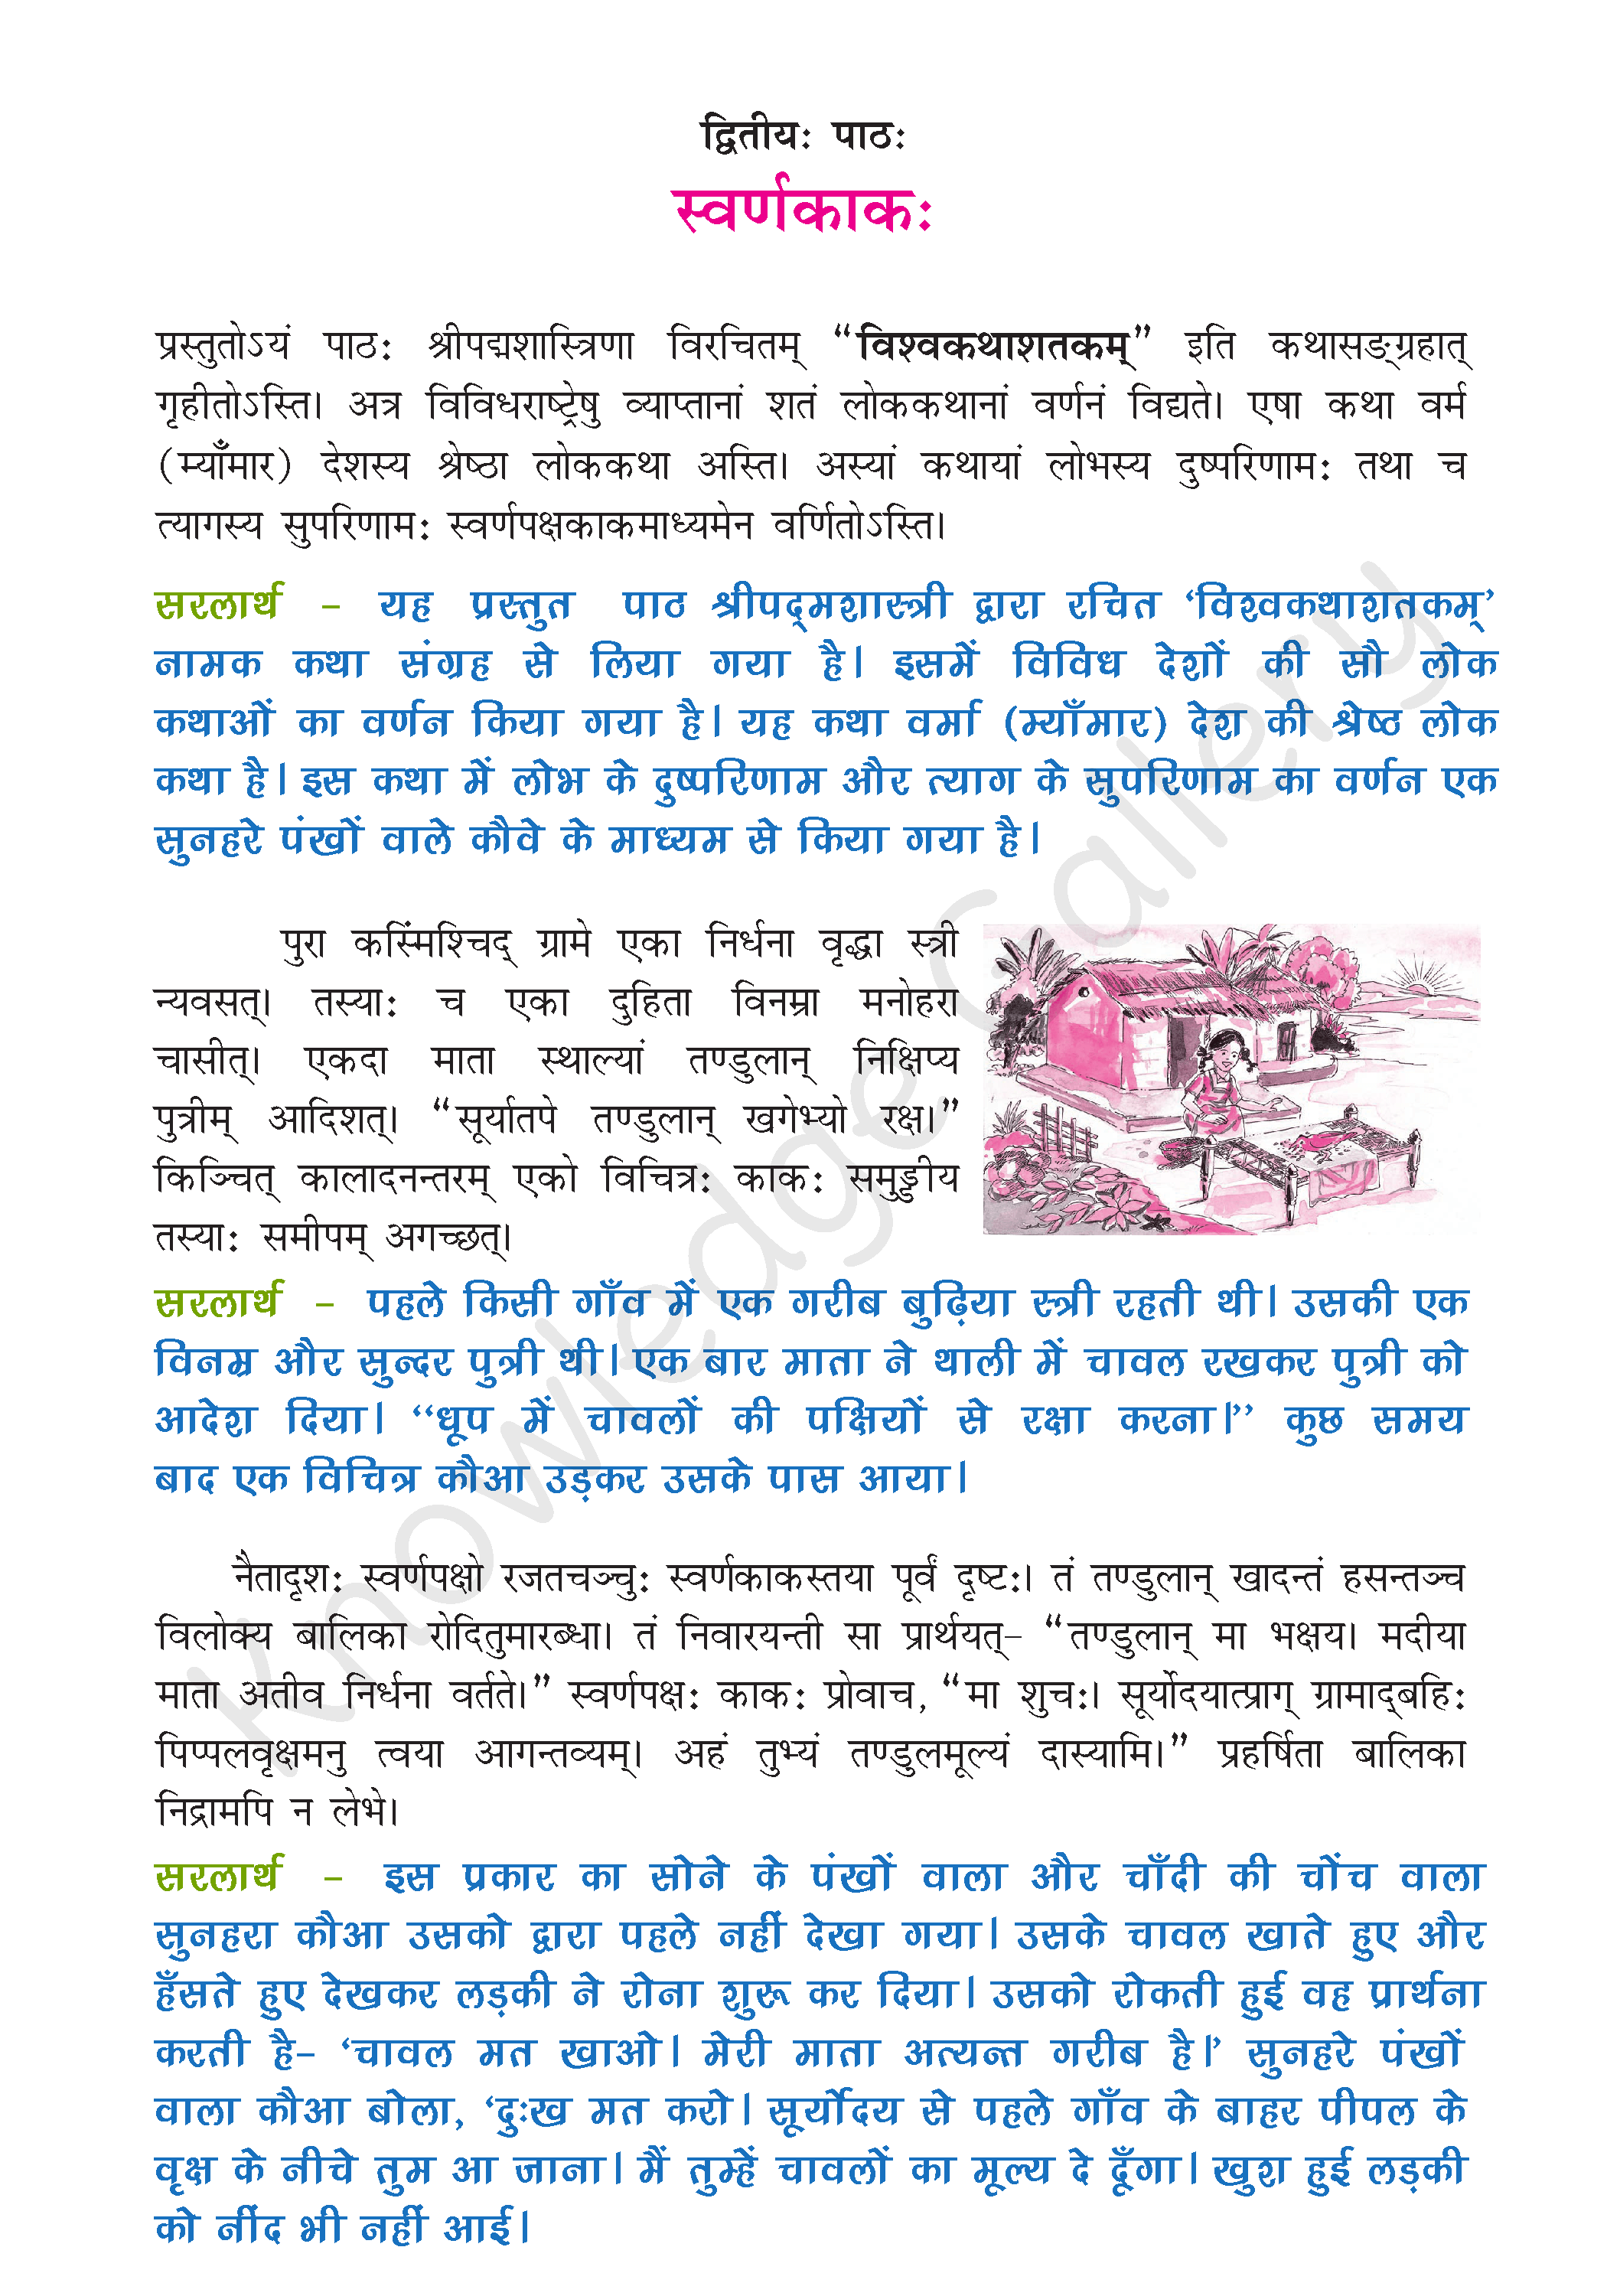 NCERT Solution For Class 9 Sanskrit Chapter 2 part 1